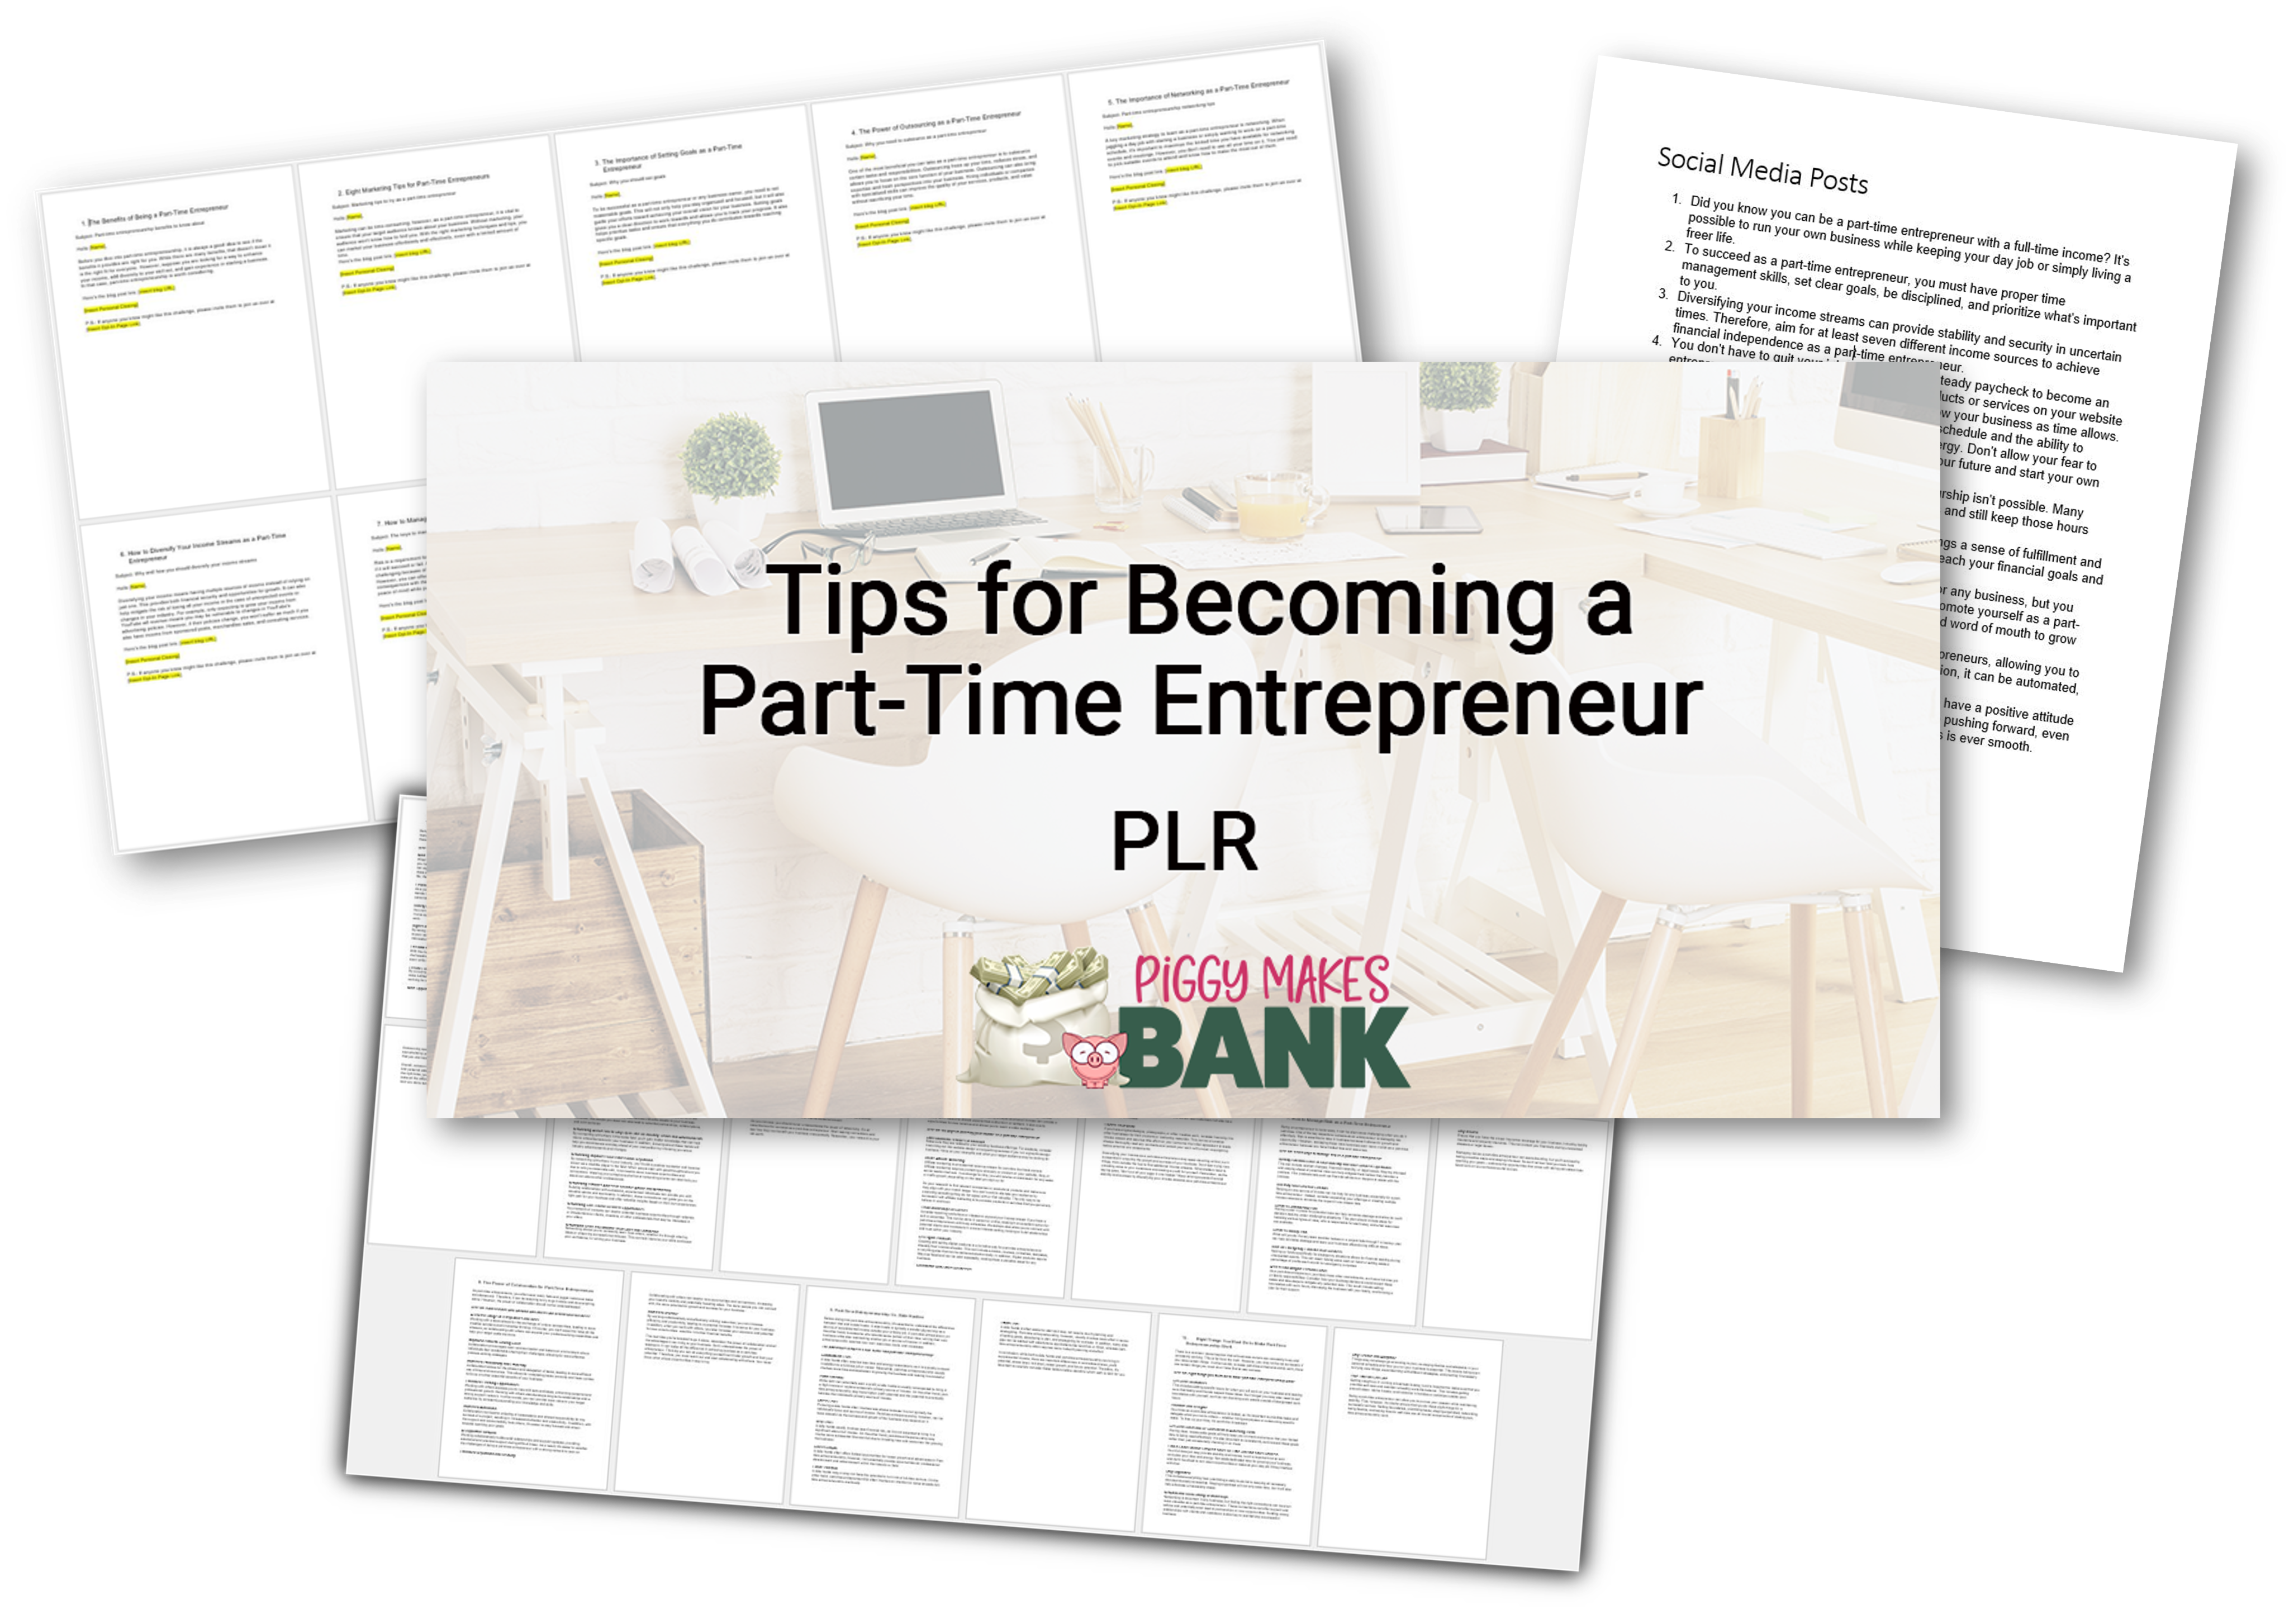 Part-Time Entrepreneur Tips PLR